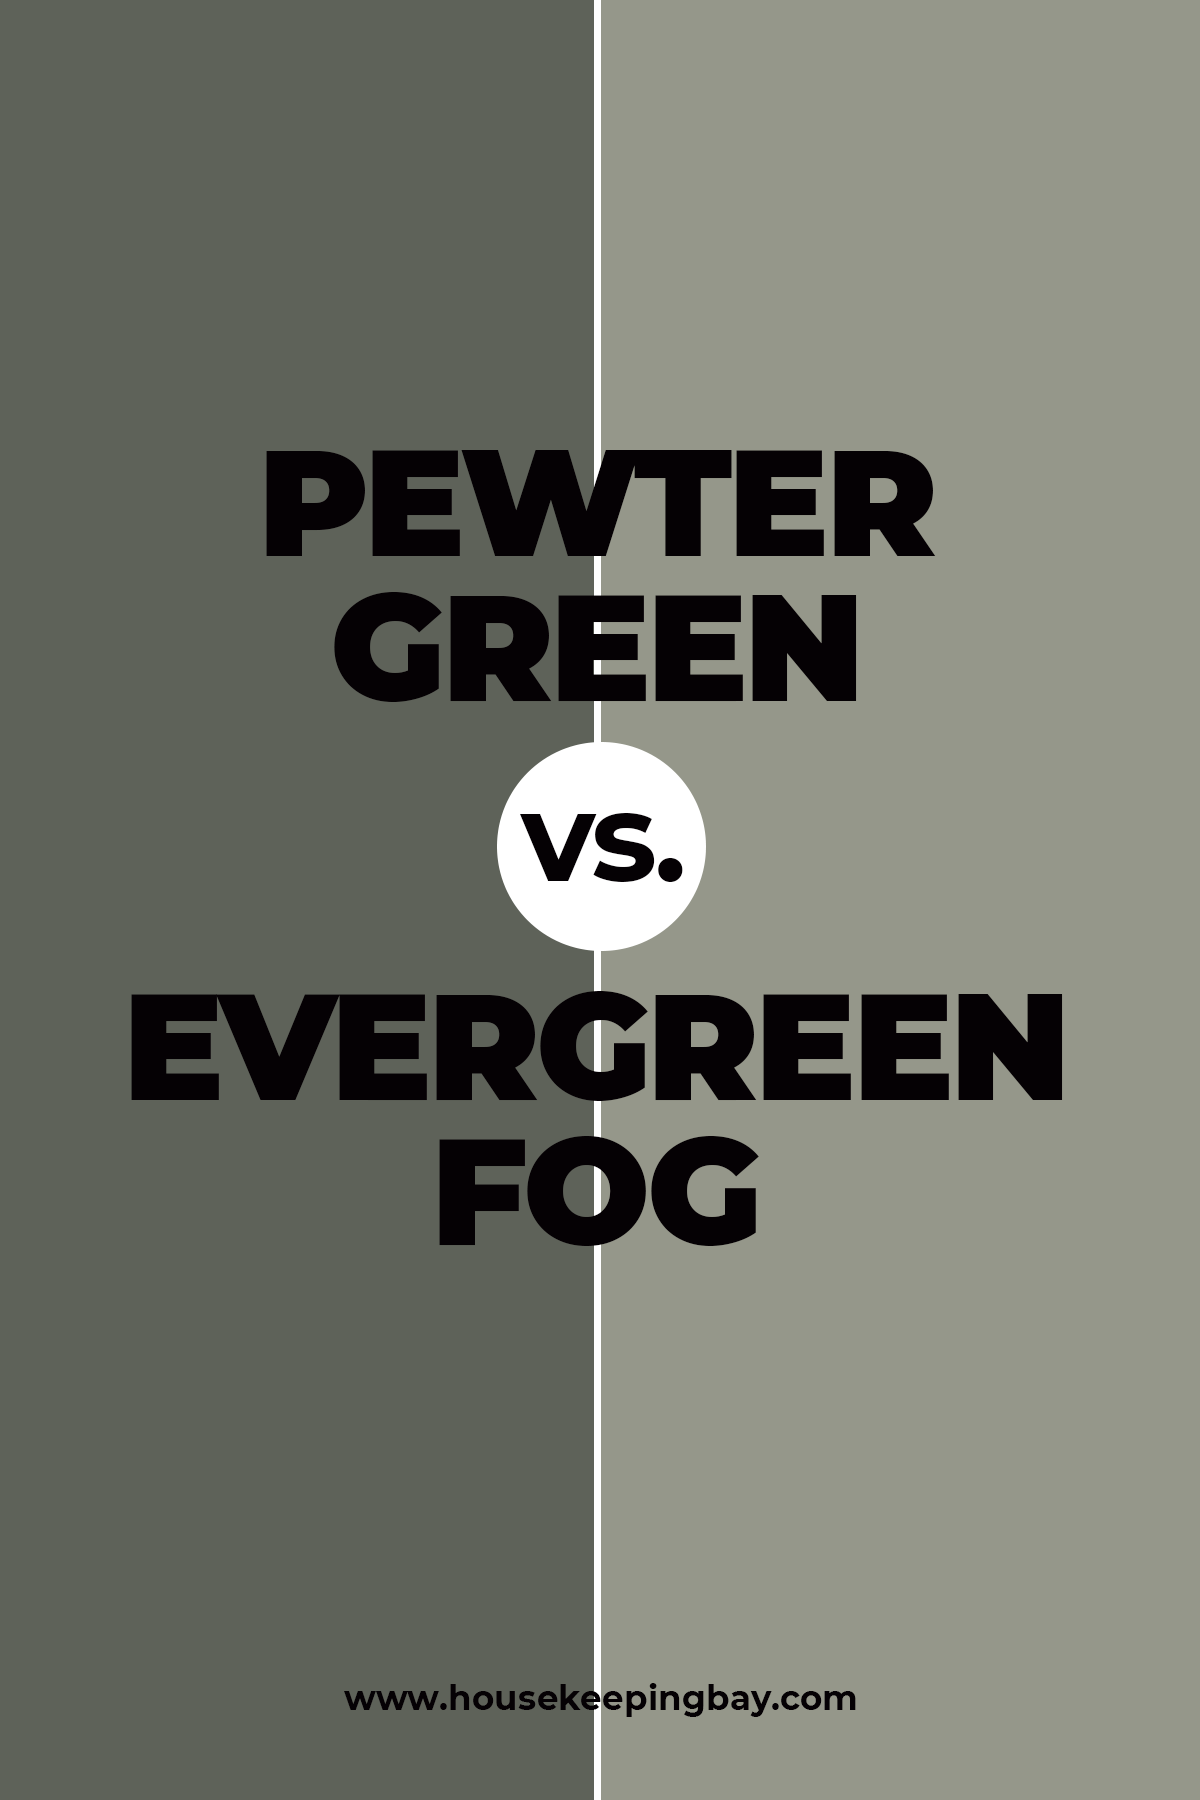 Pewter Green vs. Evergreen Fog